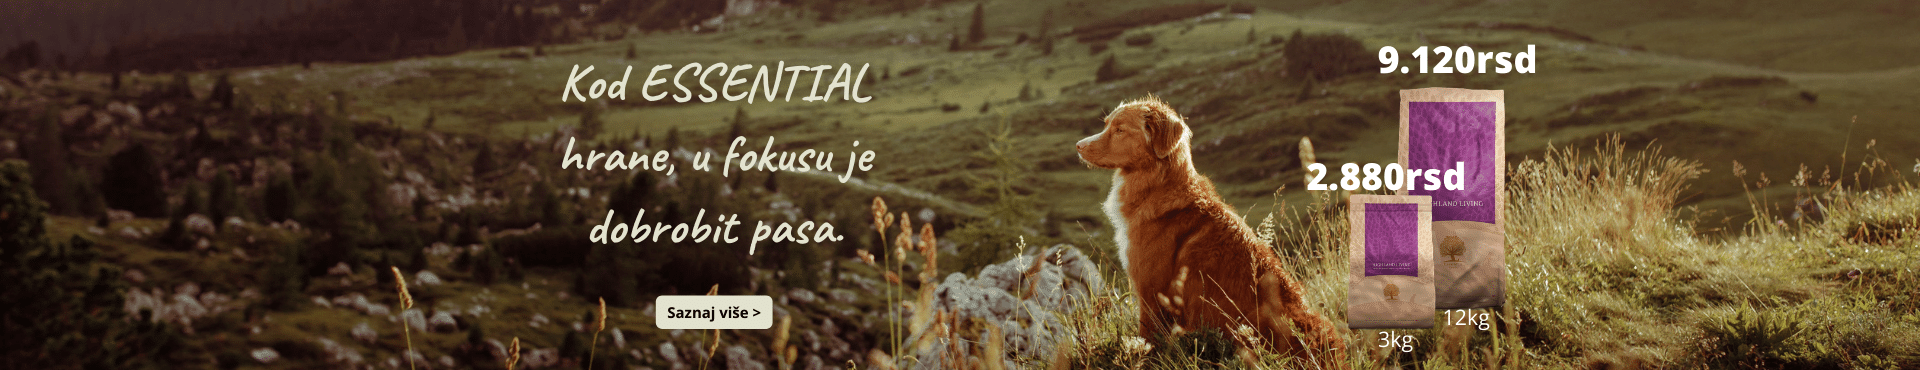 essential_hrana_za_pse_cena_animal_nature